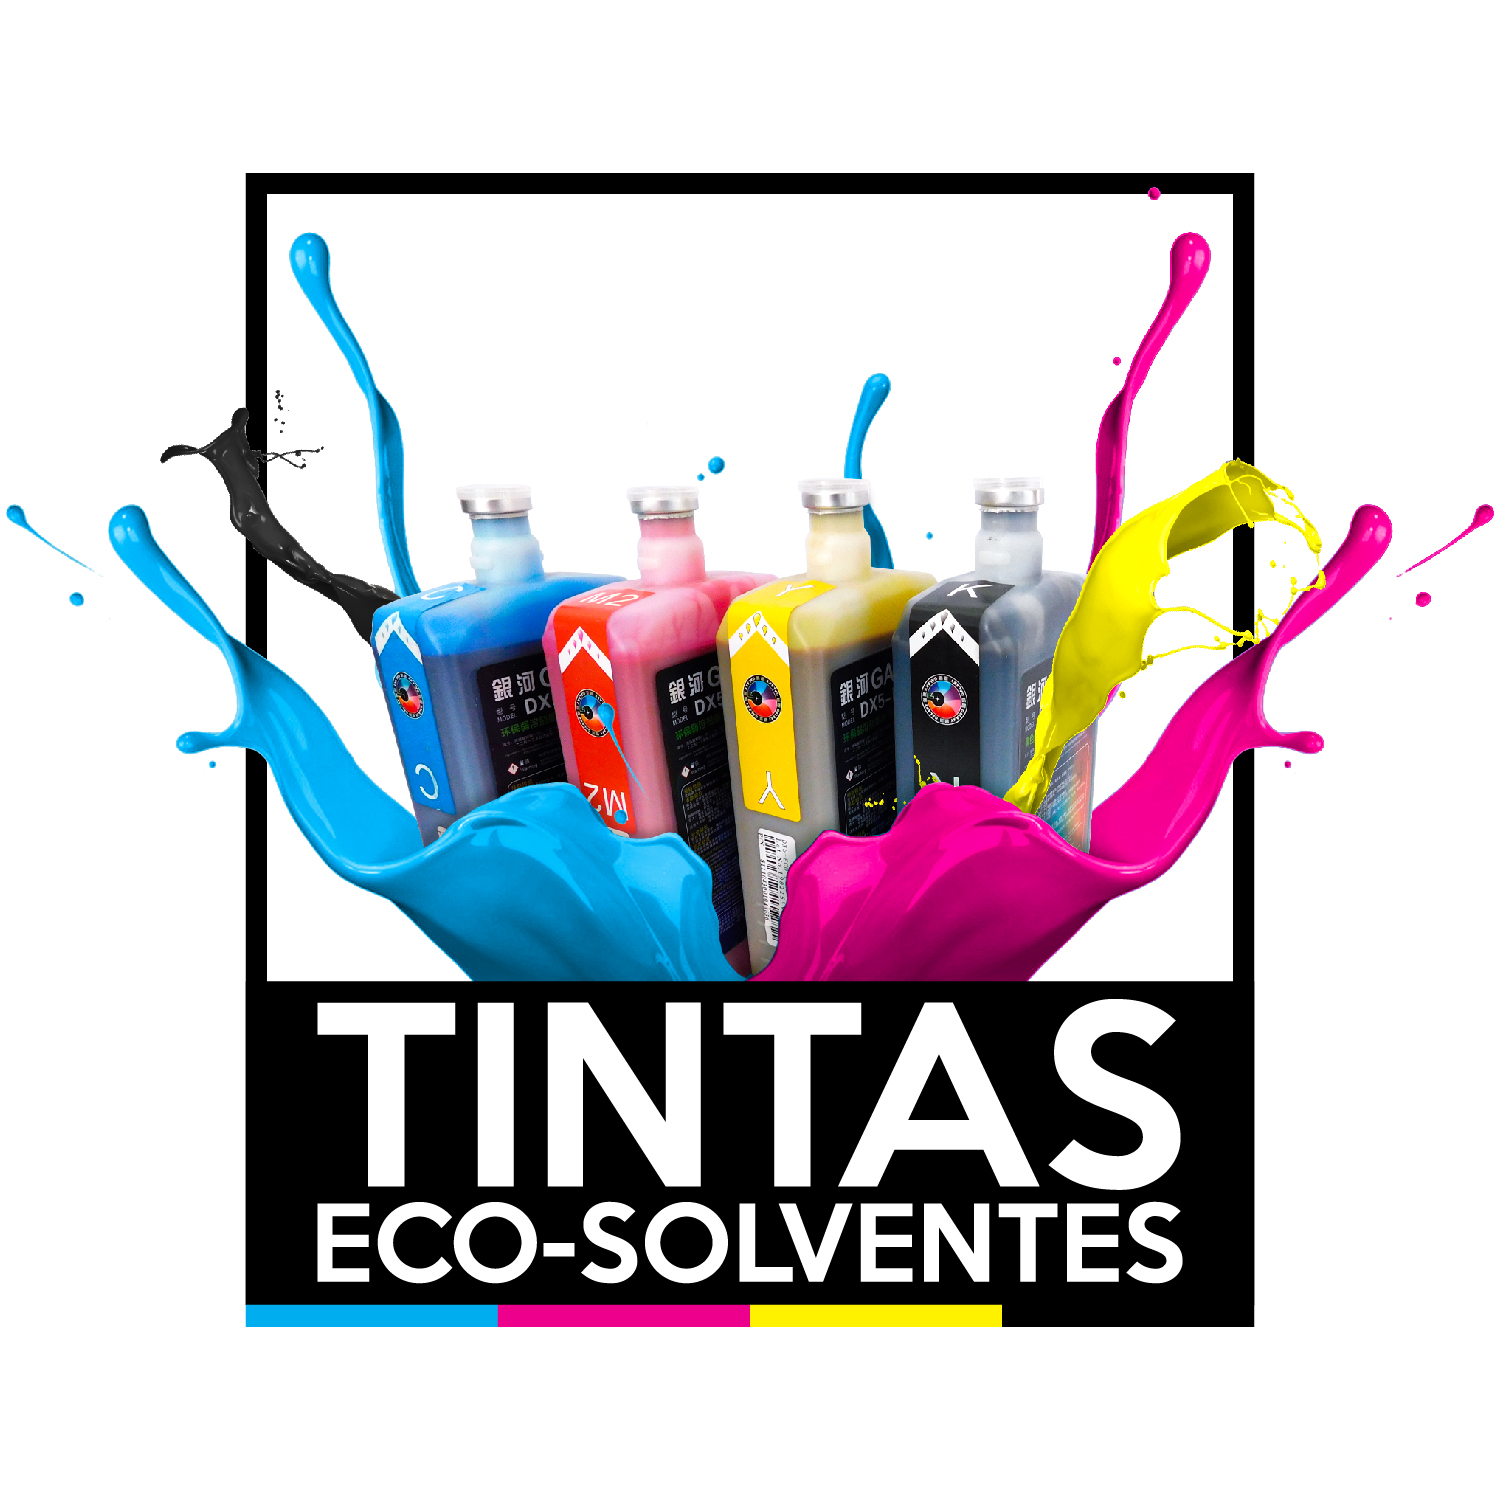 TINTAS ECO-SOLVENTES